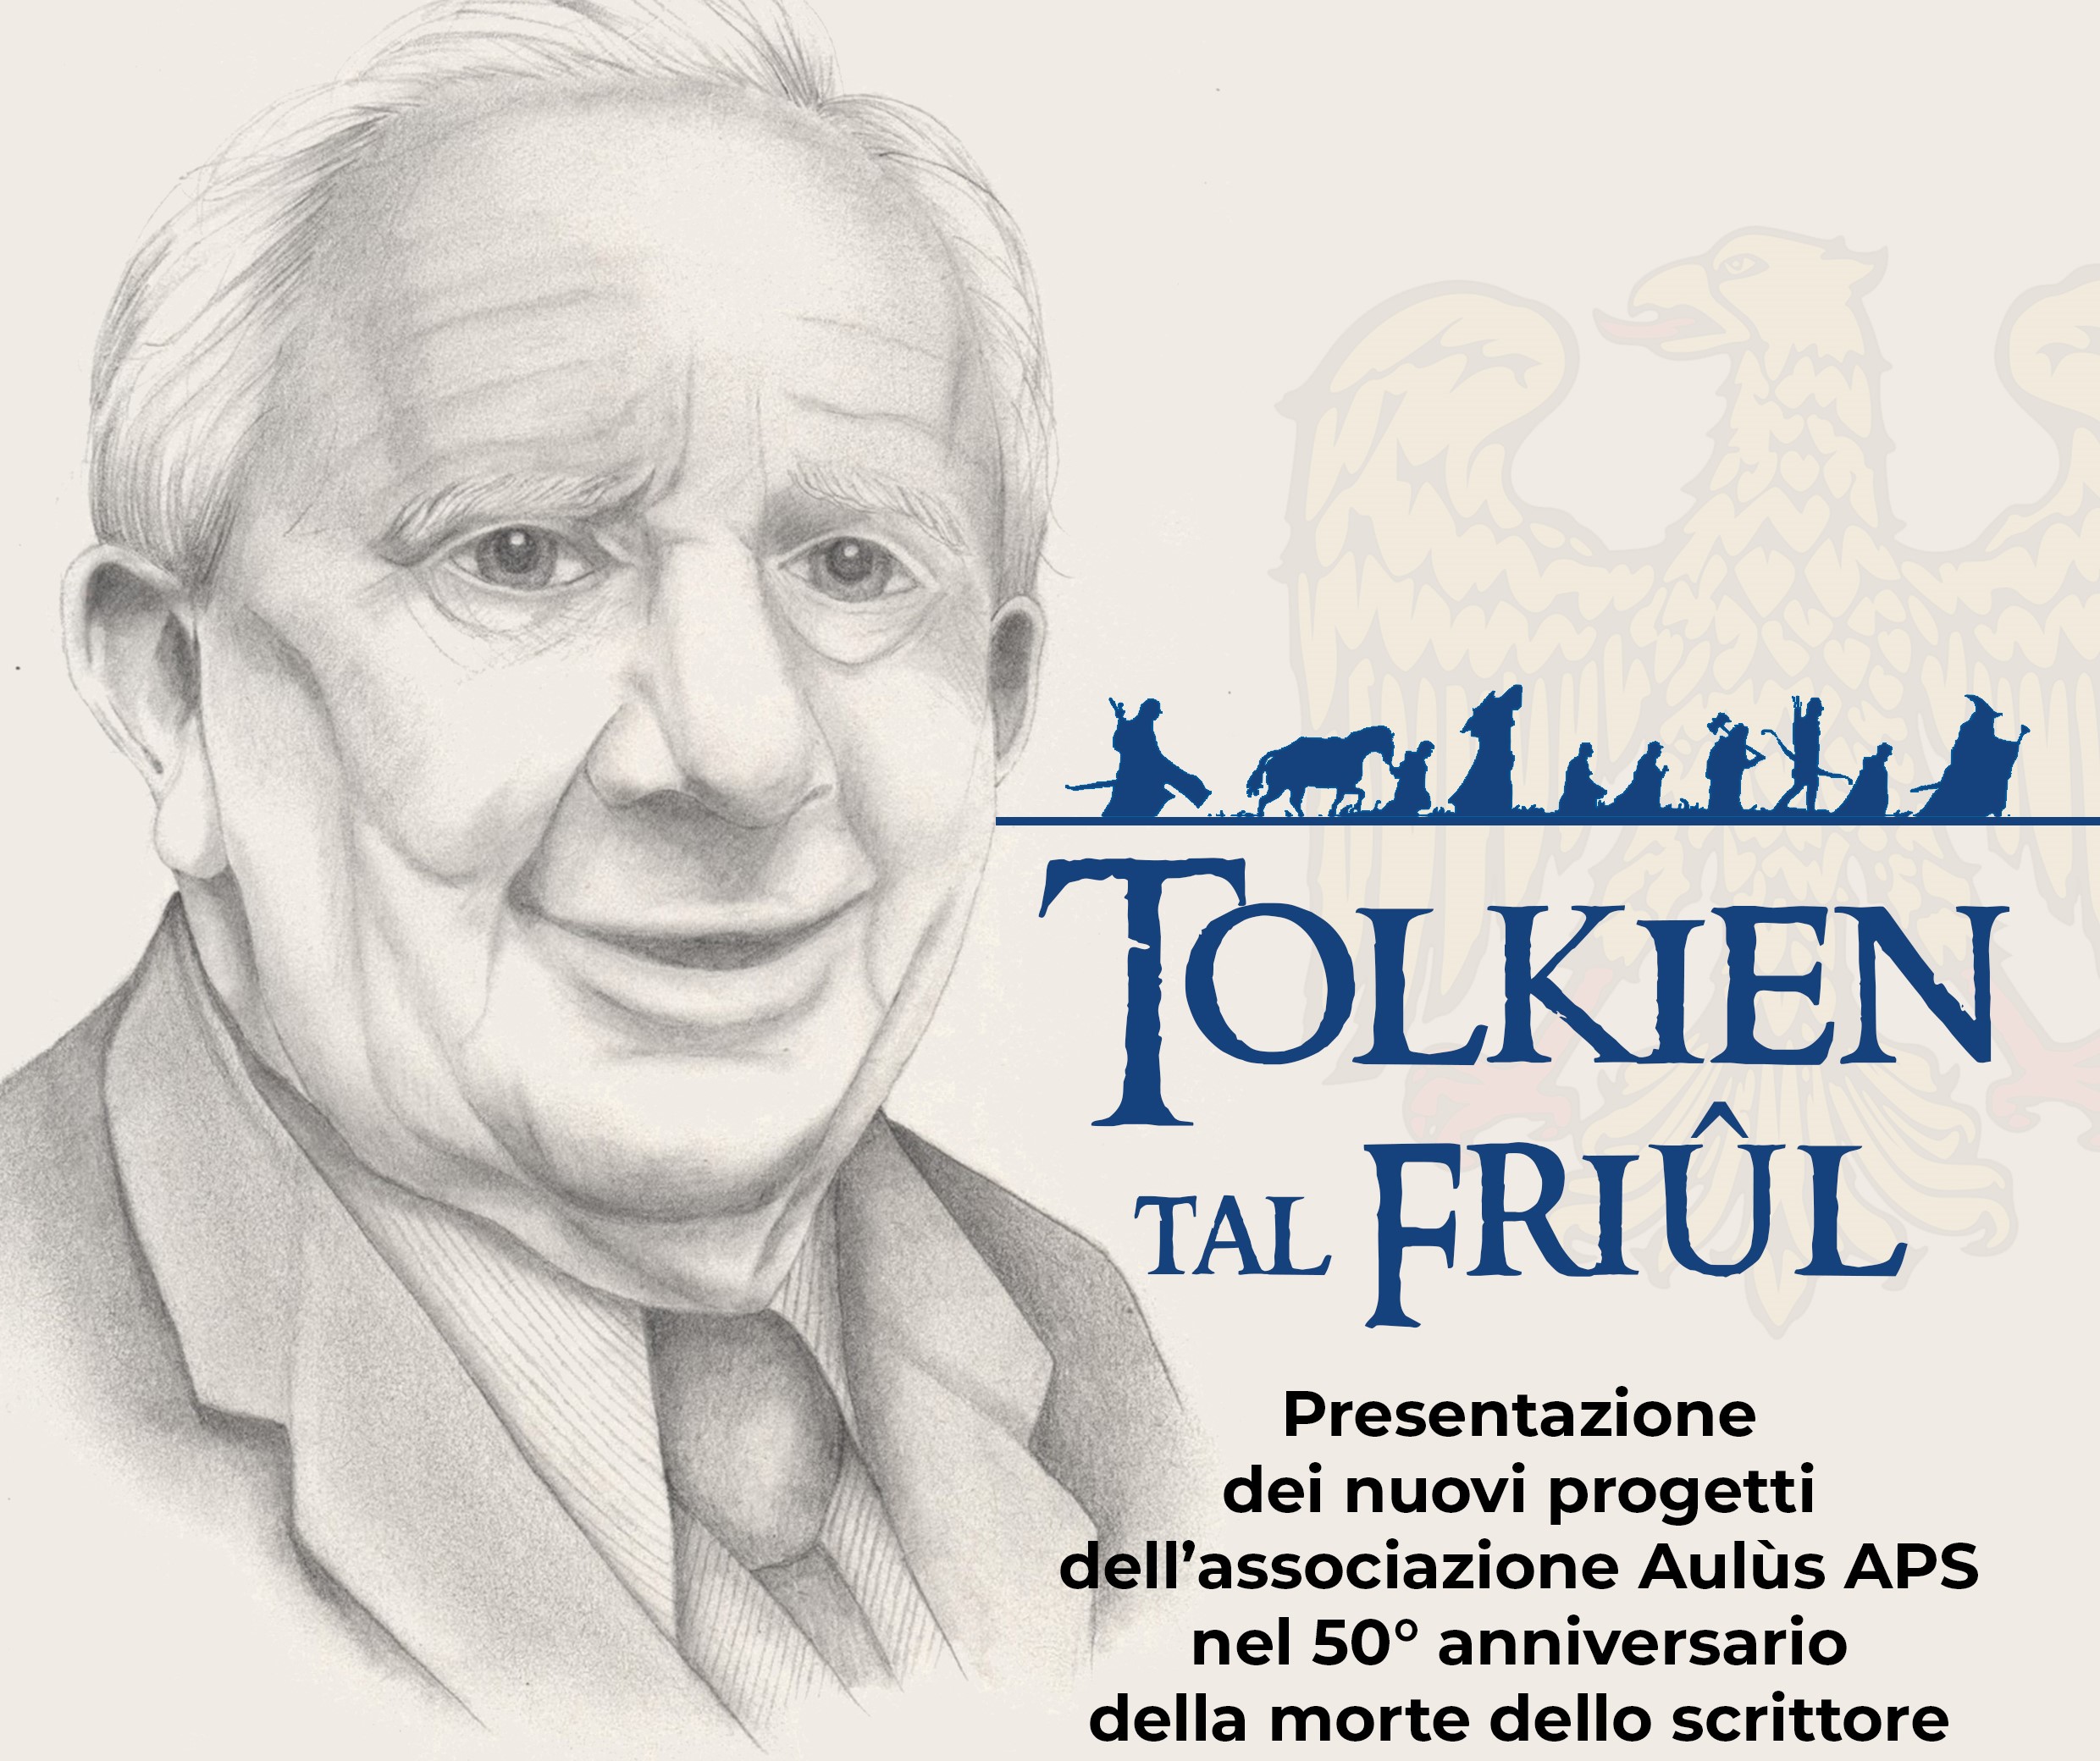 Una sera per ascoltare Tolkien e conoscere gli ultimi progetti di Aulùs